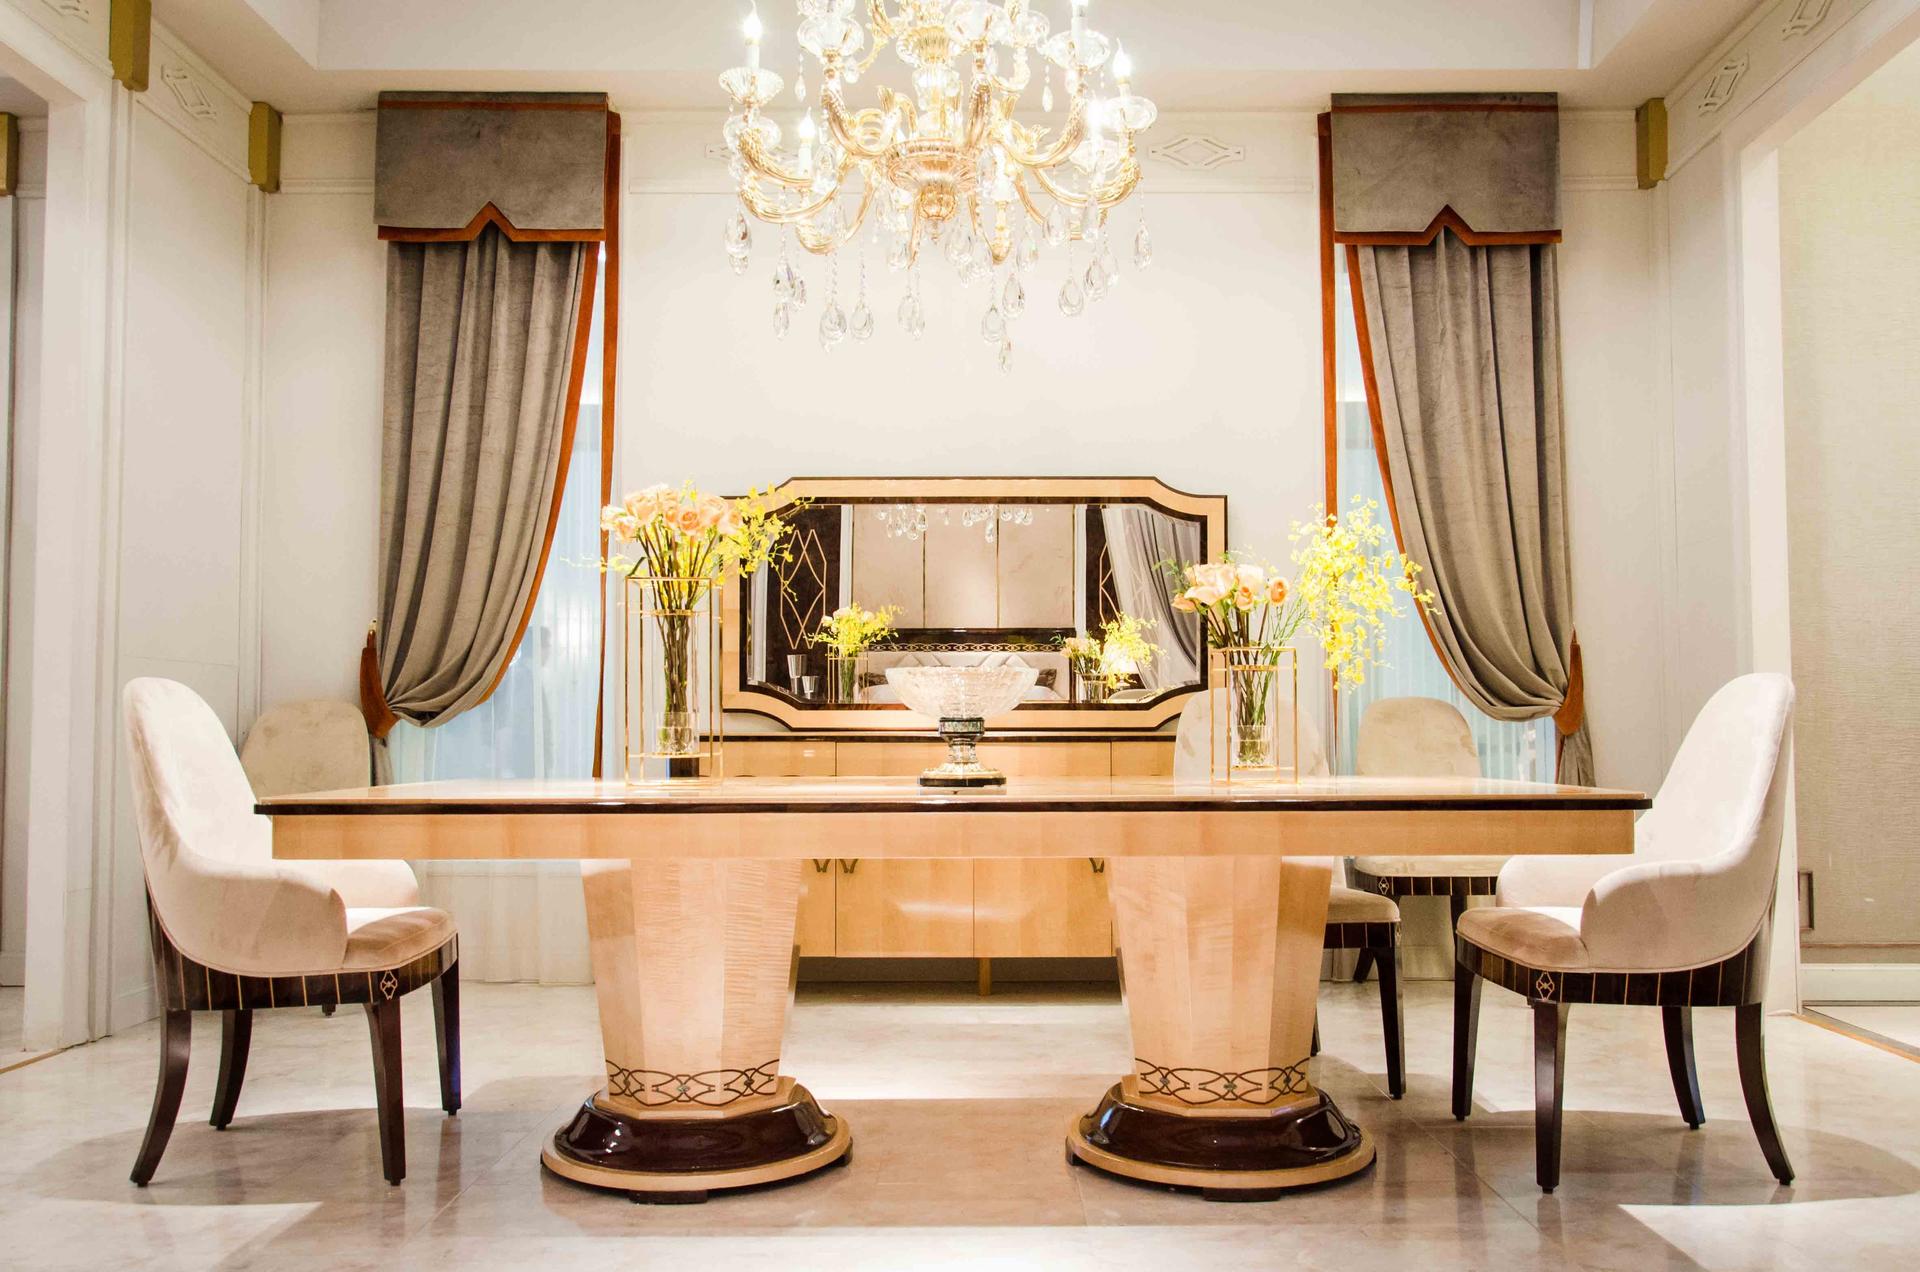 Senbetter dinette sets luxury home dinning